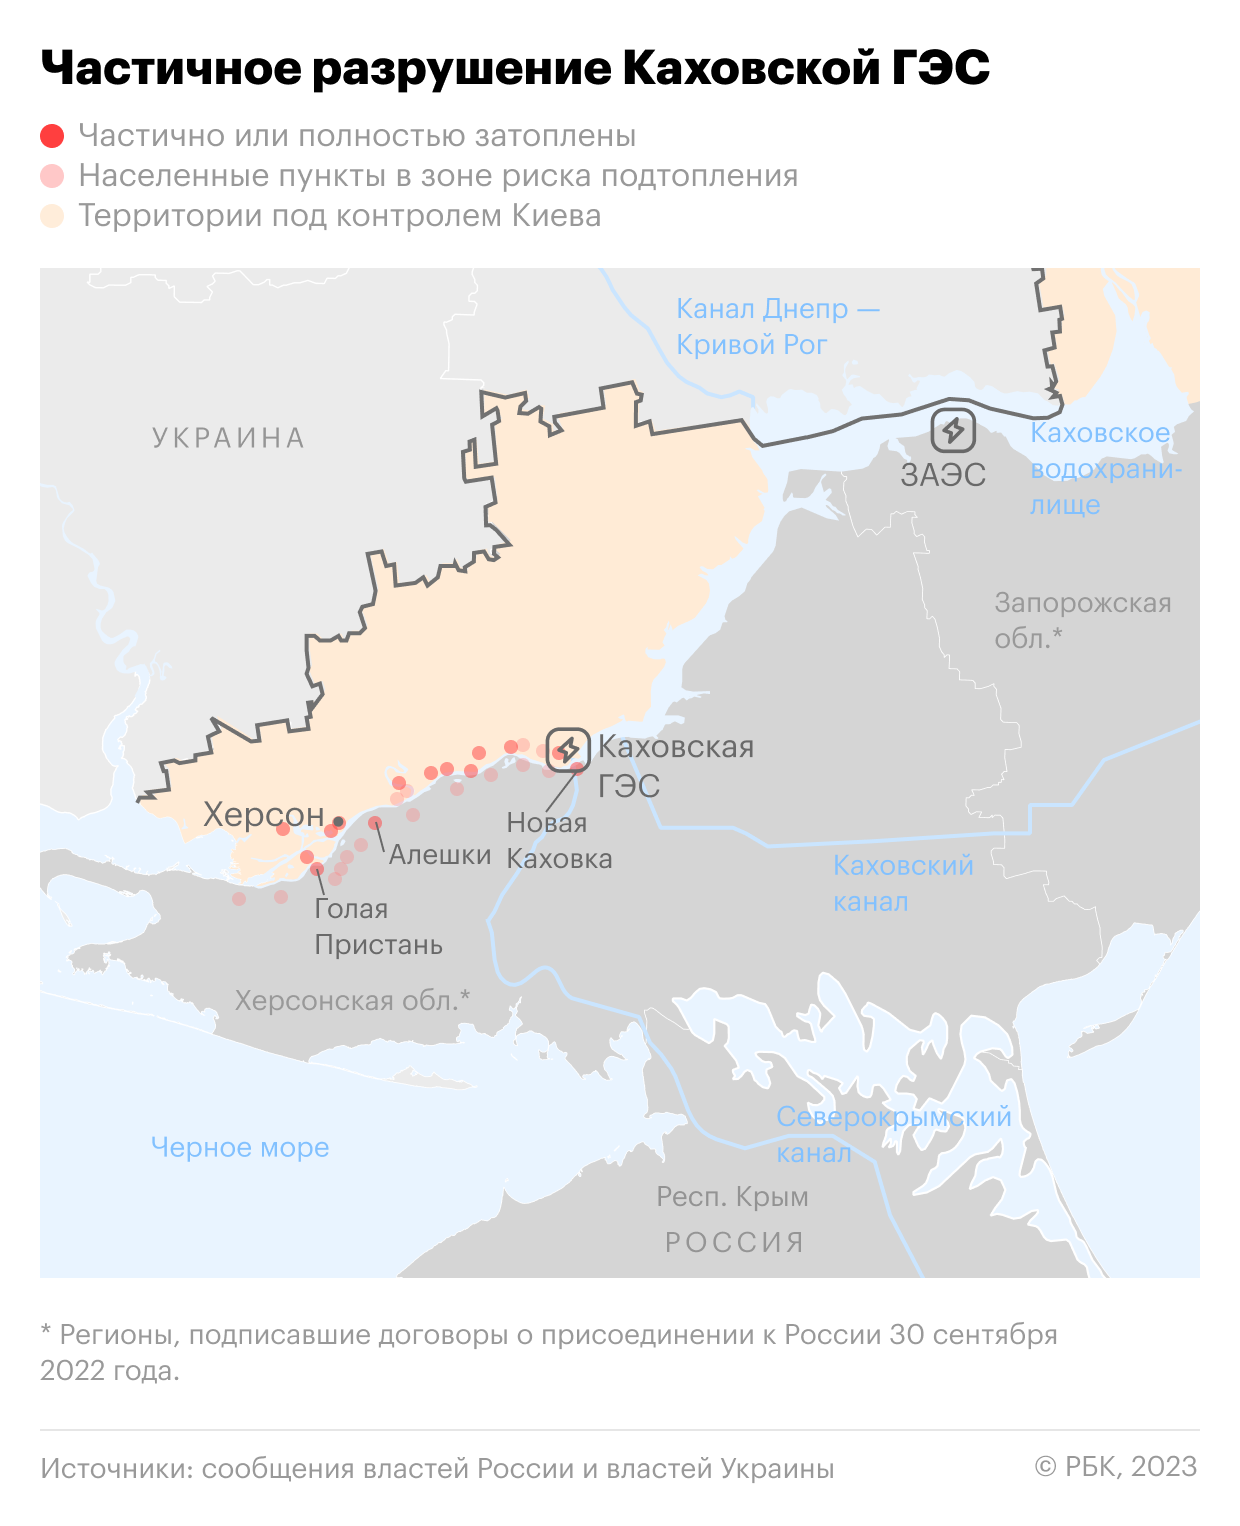 МИД сообщил, из-за чего 6 июня начала разрушаться Каховская ГЭС"/>













